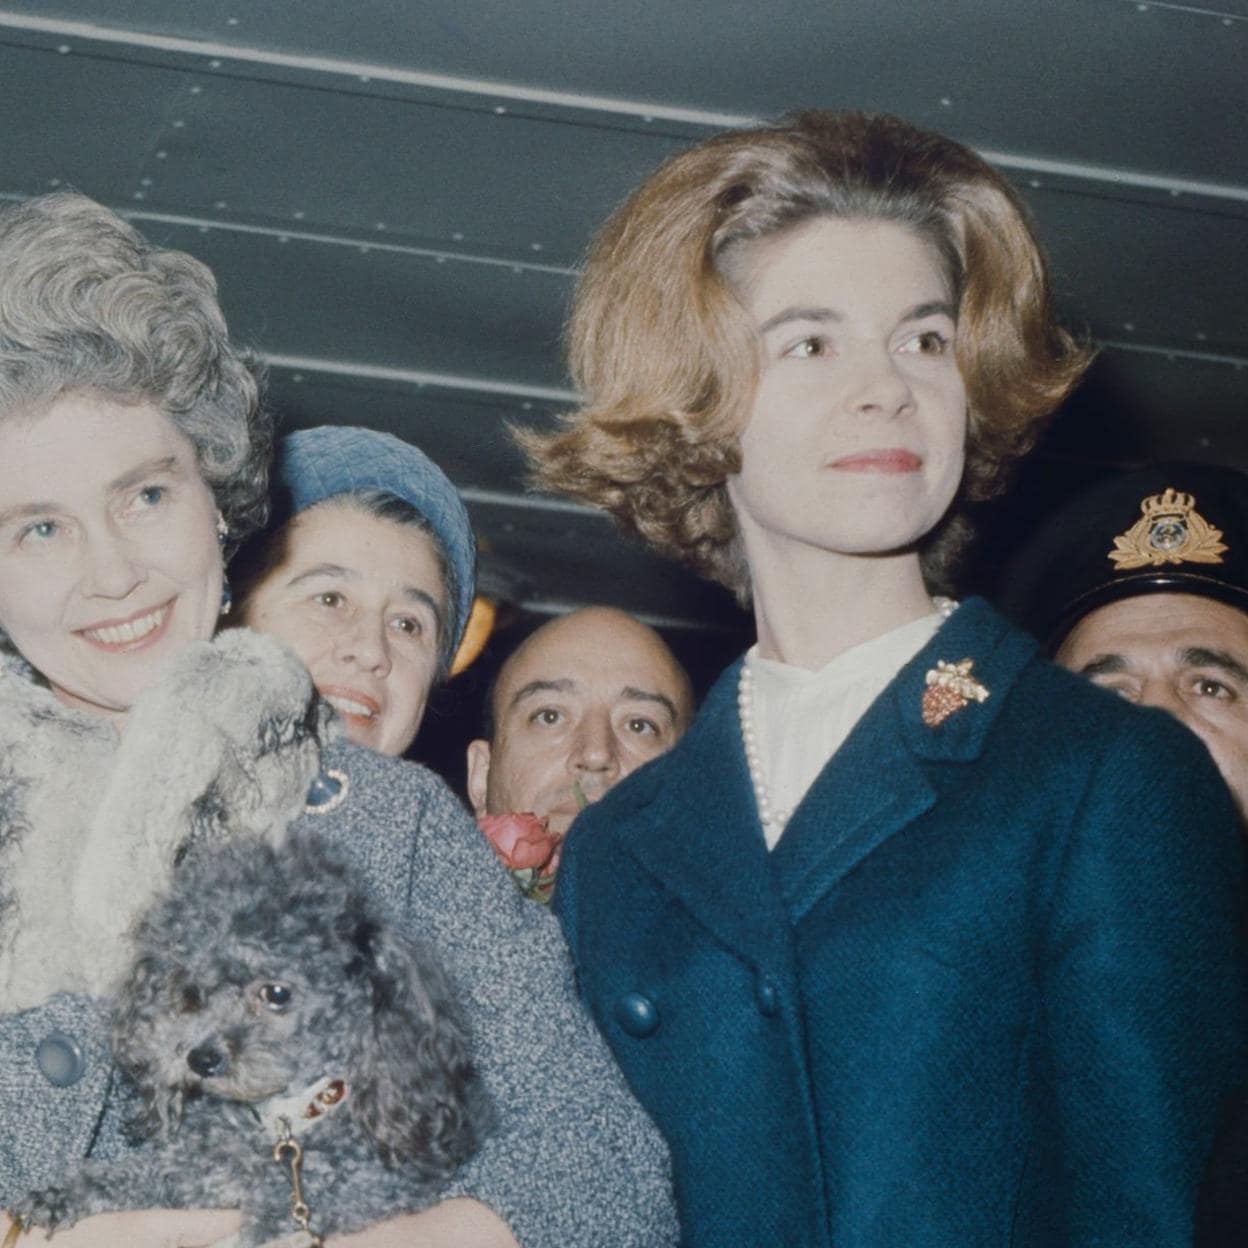 La princesa Irene de Grecia y Dinamarca, fotografiada junto a su madre, Federica de Grecia, en 1964. /getty images